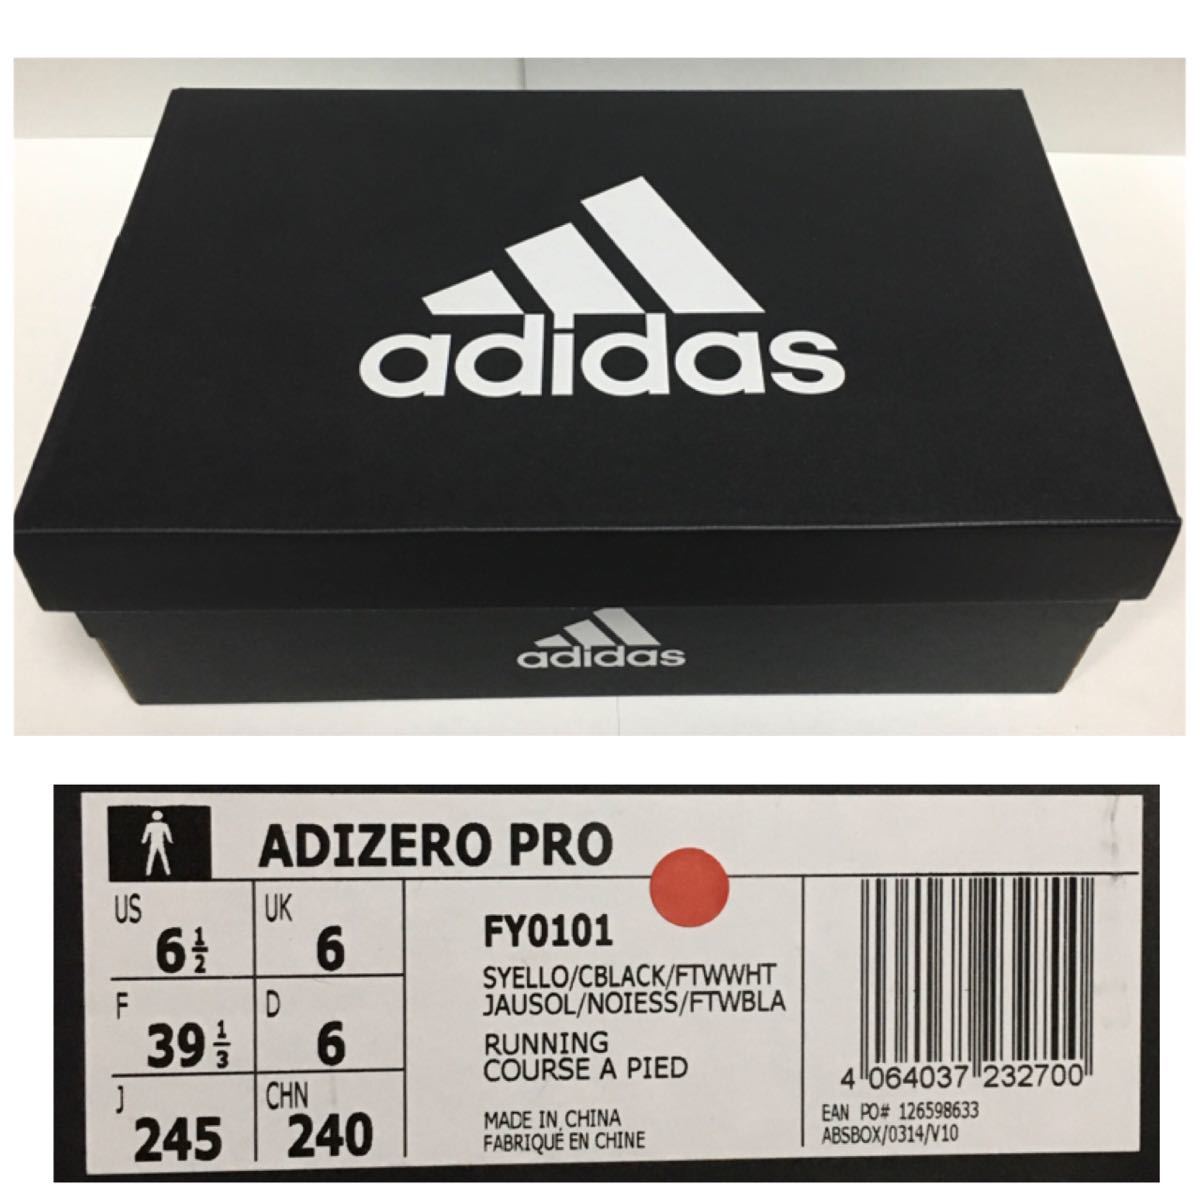 【新品☆未使用】adidas アディゼロプロ AdizeroPro FY0101 24.5cm 定価24,200円